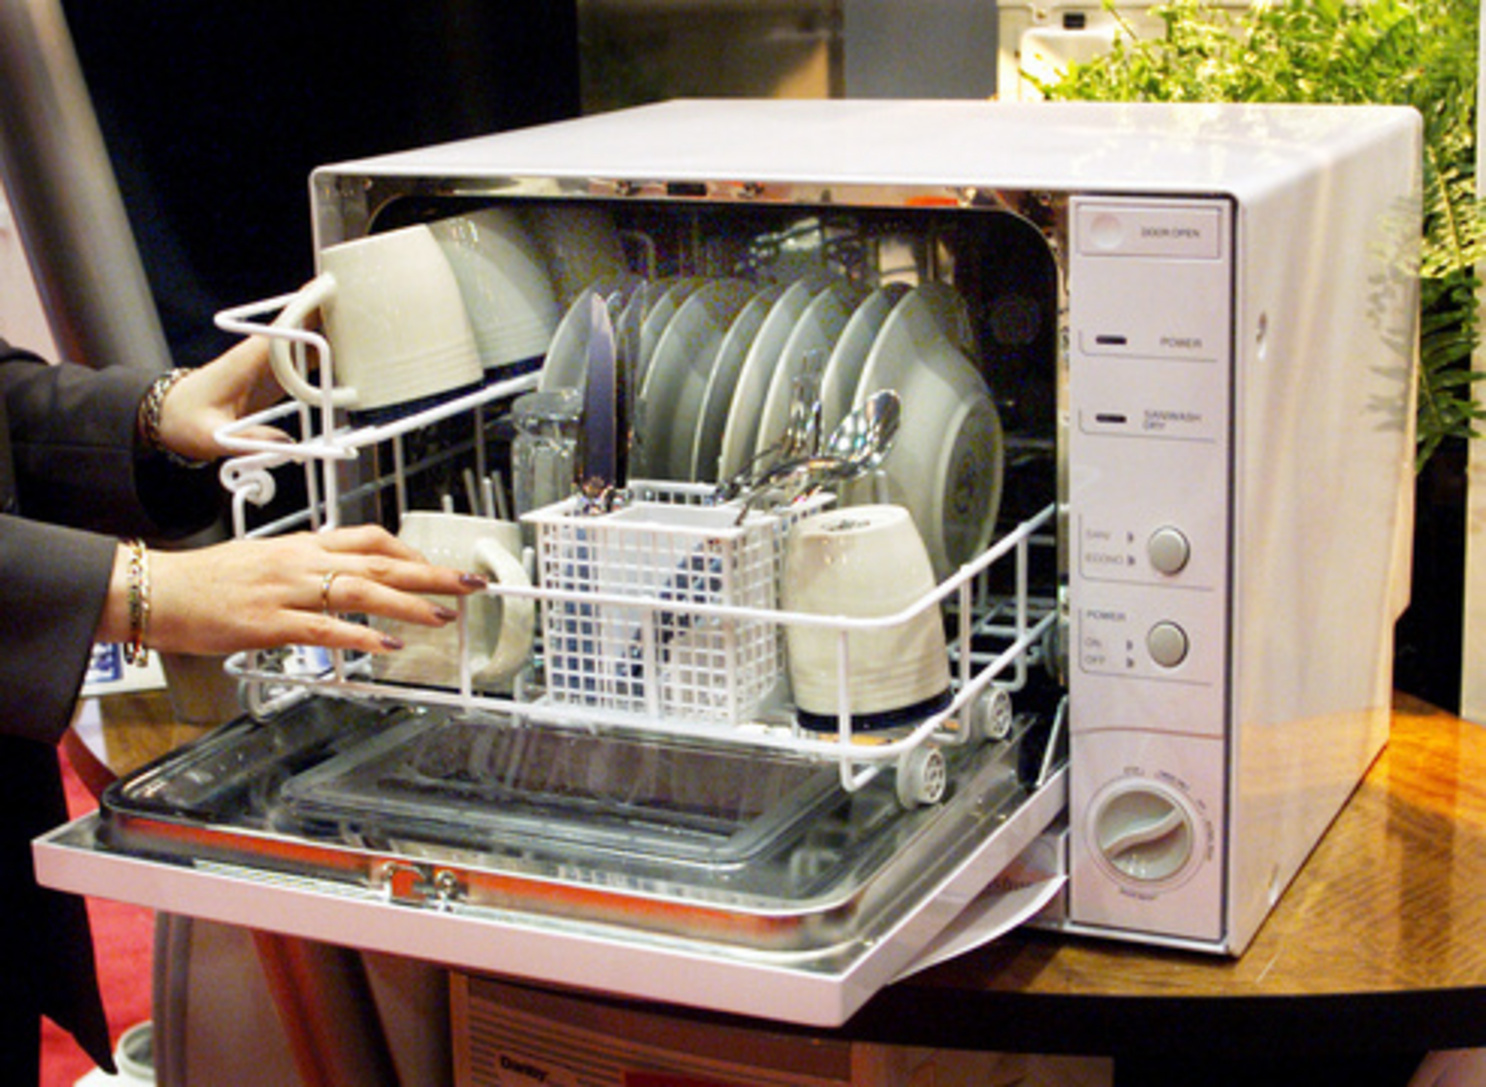 Небольшая посудомоечная машина. Bosch 3002 посудомоечная машина. Компактная встраиваемая посудомоечная машина Bosch. Посудомоечная машина бош маленькая. Компактные посудомоечные машины настольные Bosch.